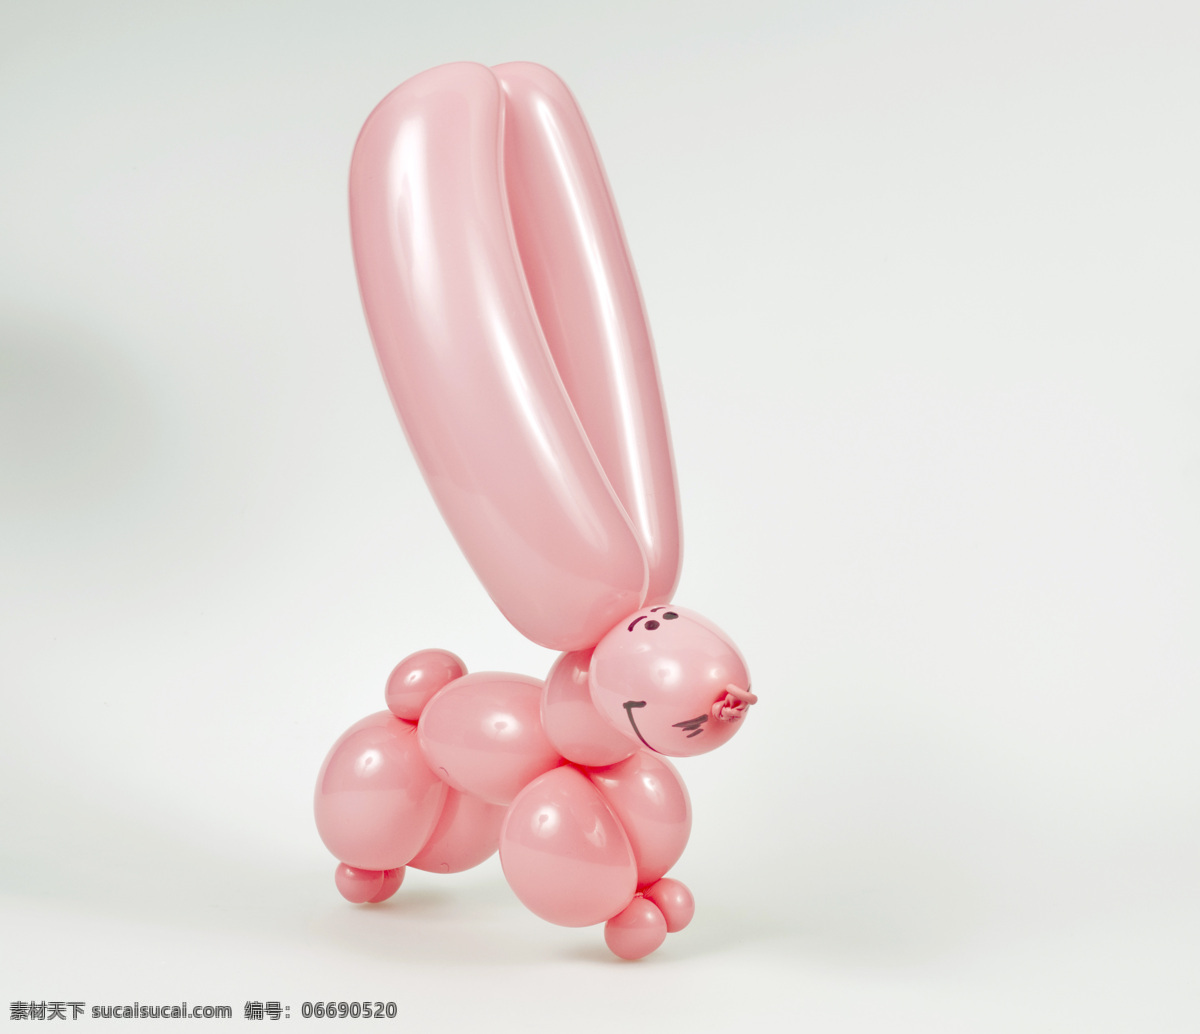 粉丝气球兔子 粉丝 气球 兔子 红色小兔 粉丝小兔 气球兔子 气球动物 卡通动物 陆地动物 生物世界 白色